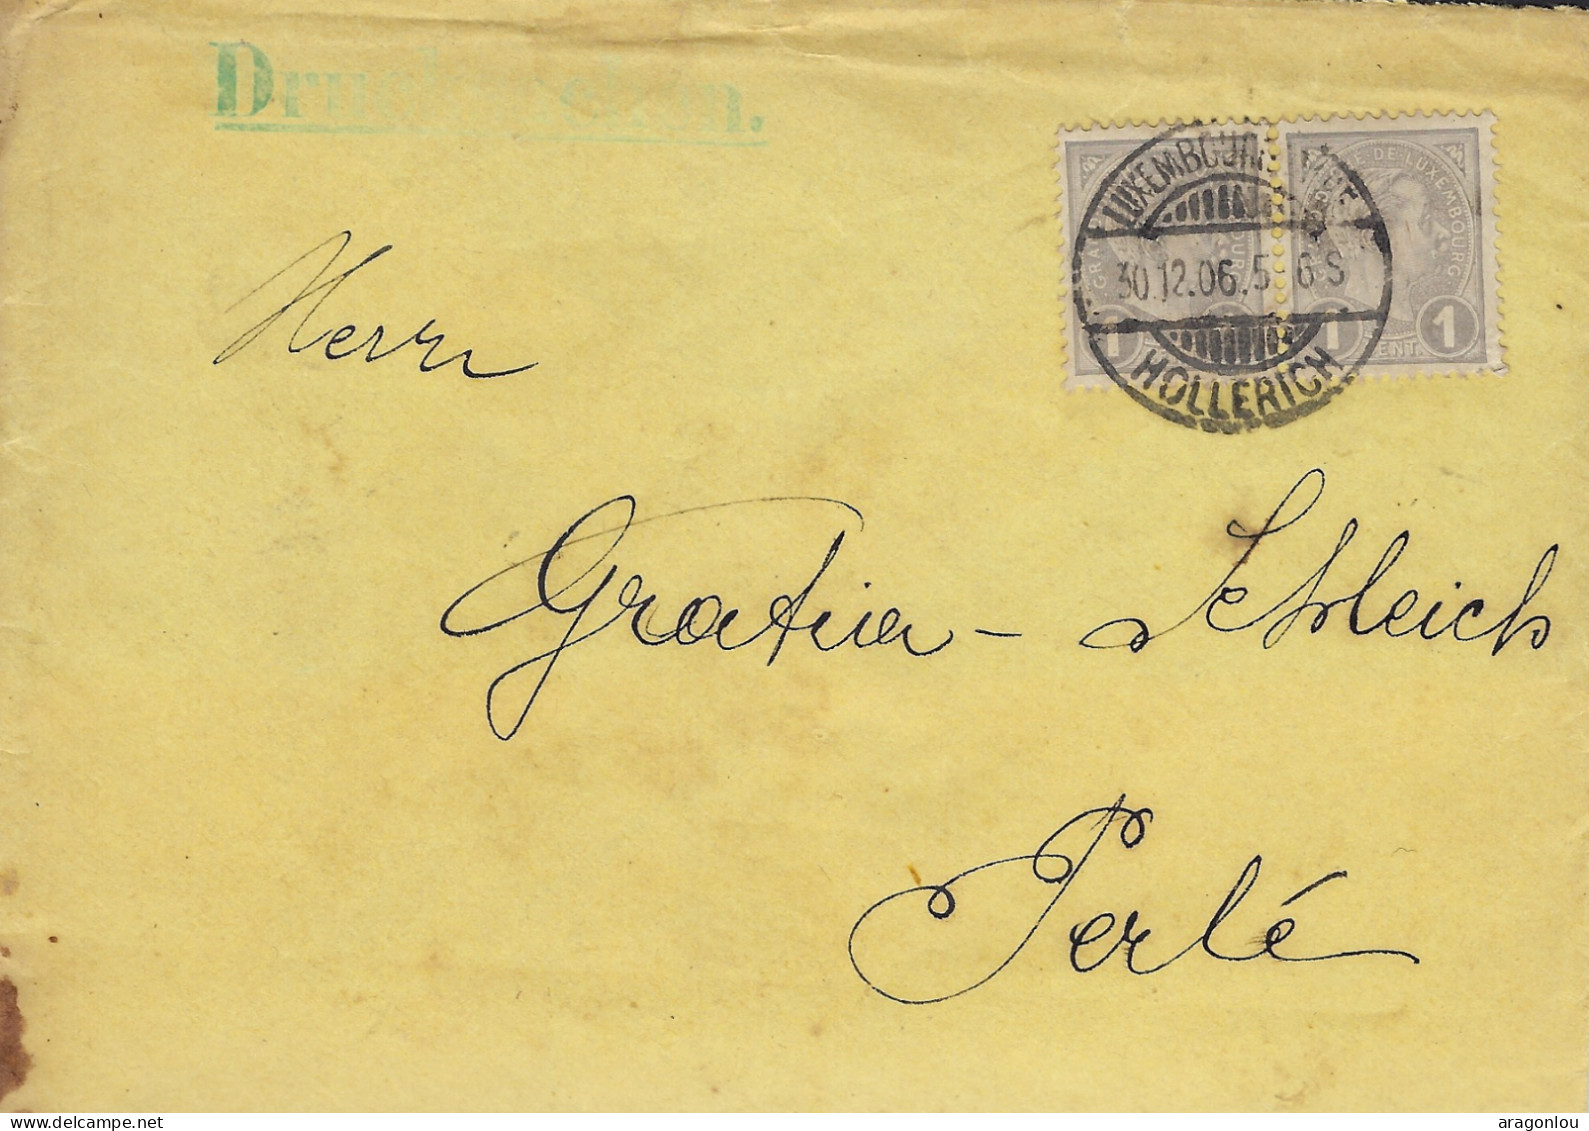 Luxembourg - Luxemburg - Lettre  1906  -  Adressiert An Herrn  GRATIA - SCHLEICH , PERLÉ - Storia Postale